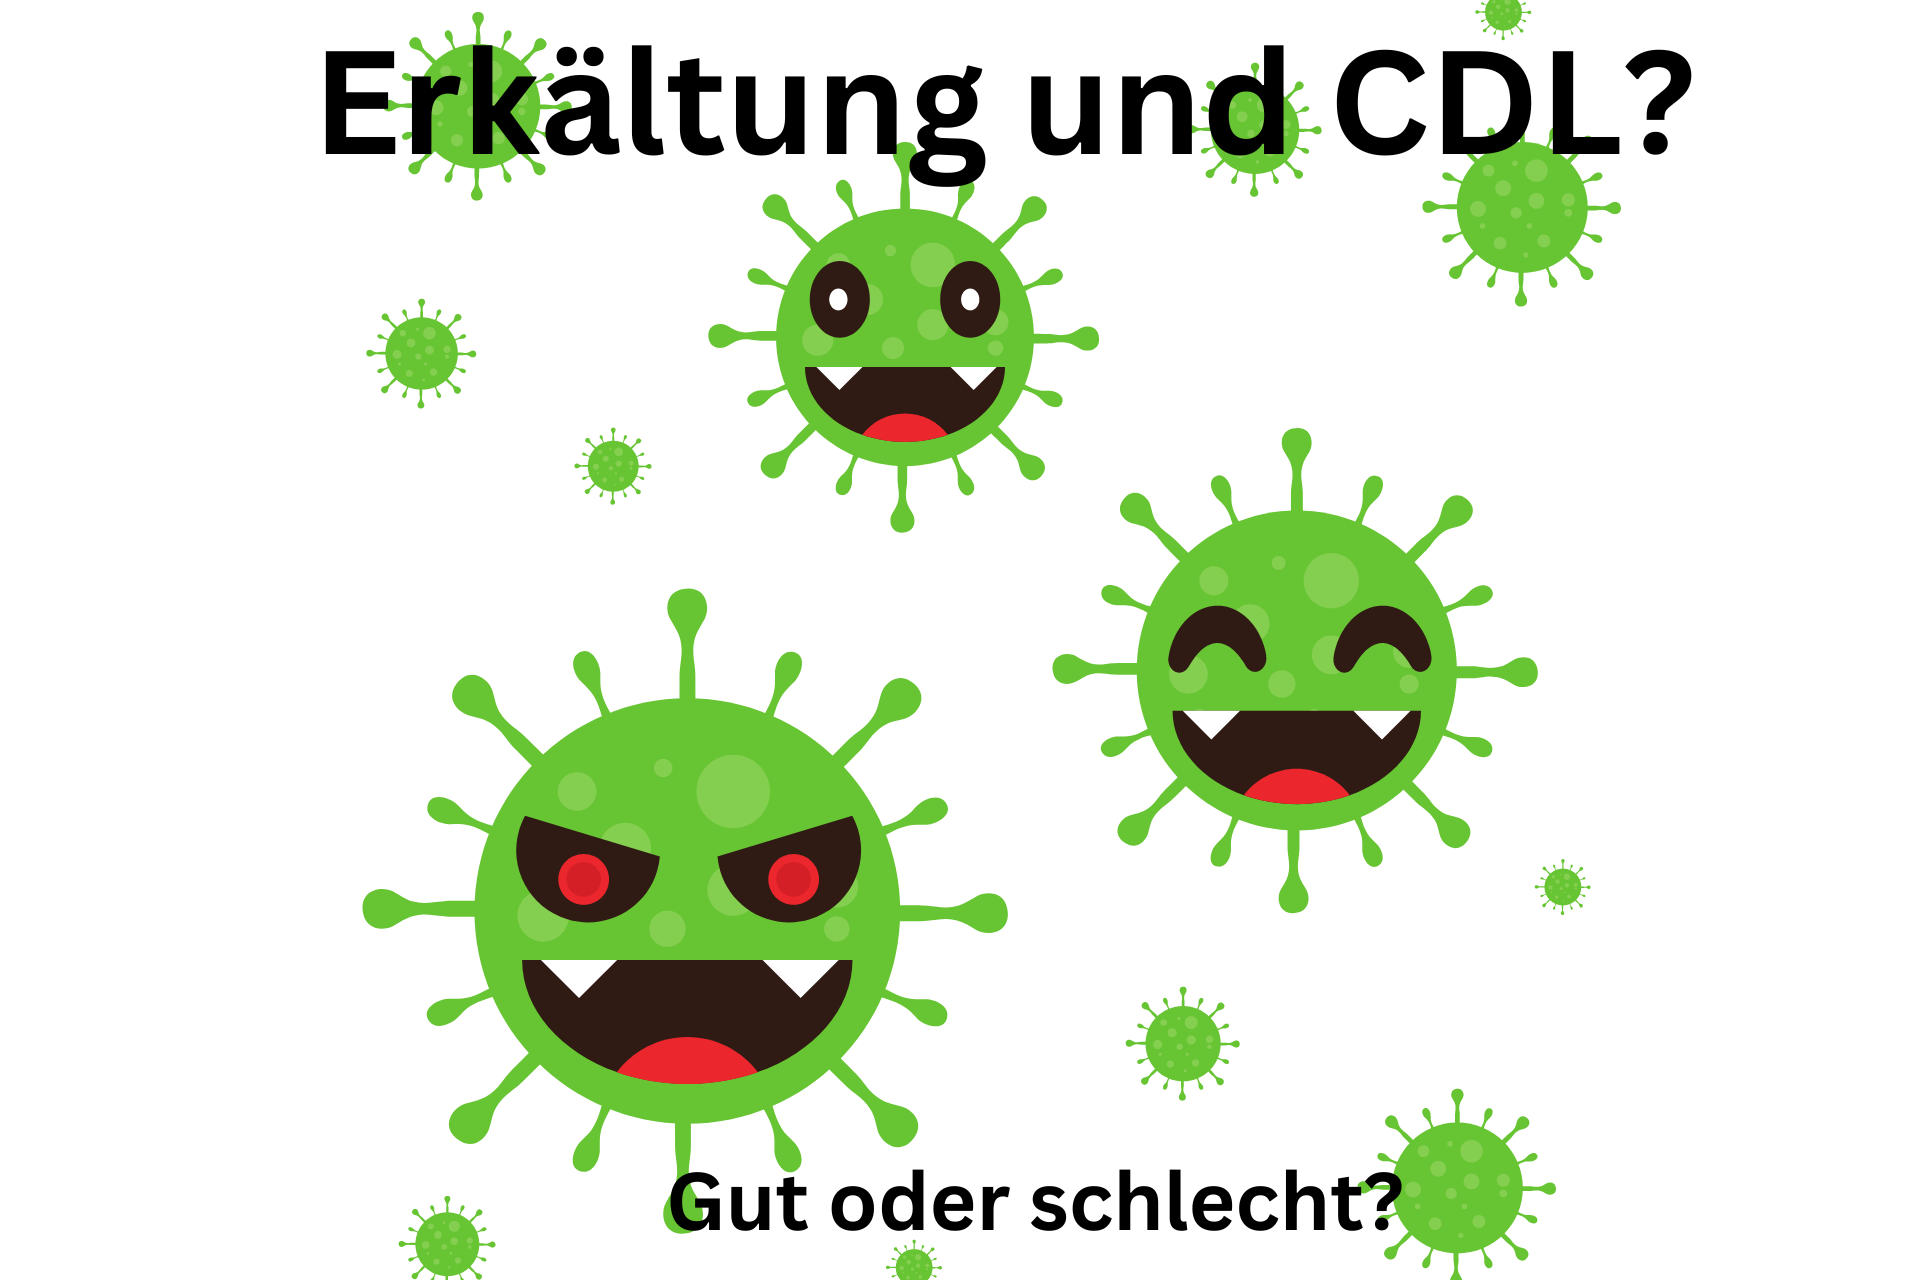 Erkältung mit CDL Behandeln, gut oder eher schlecht